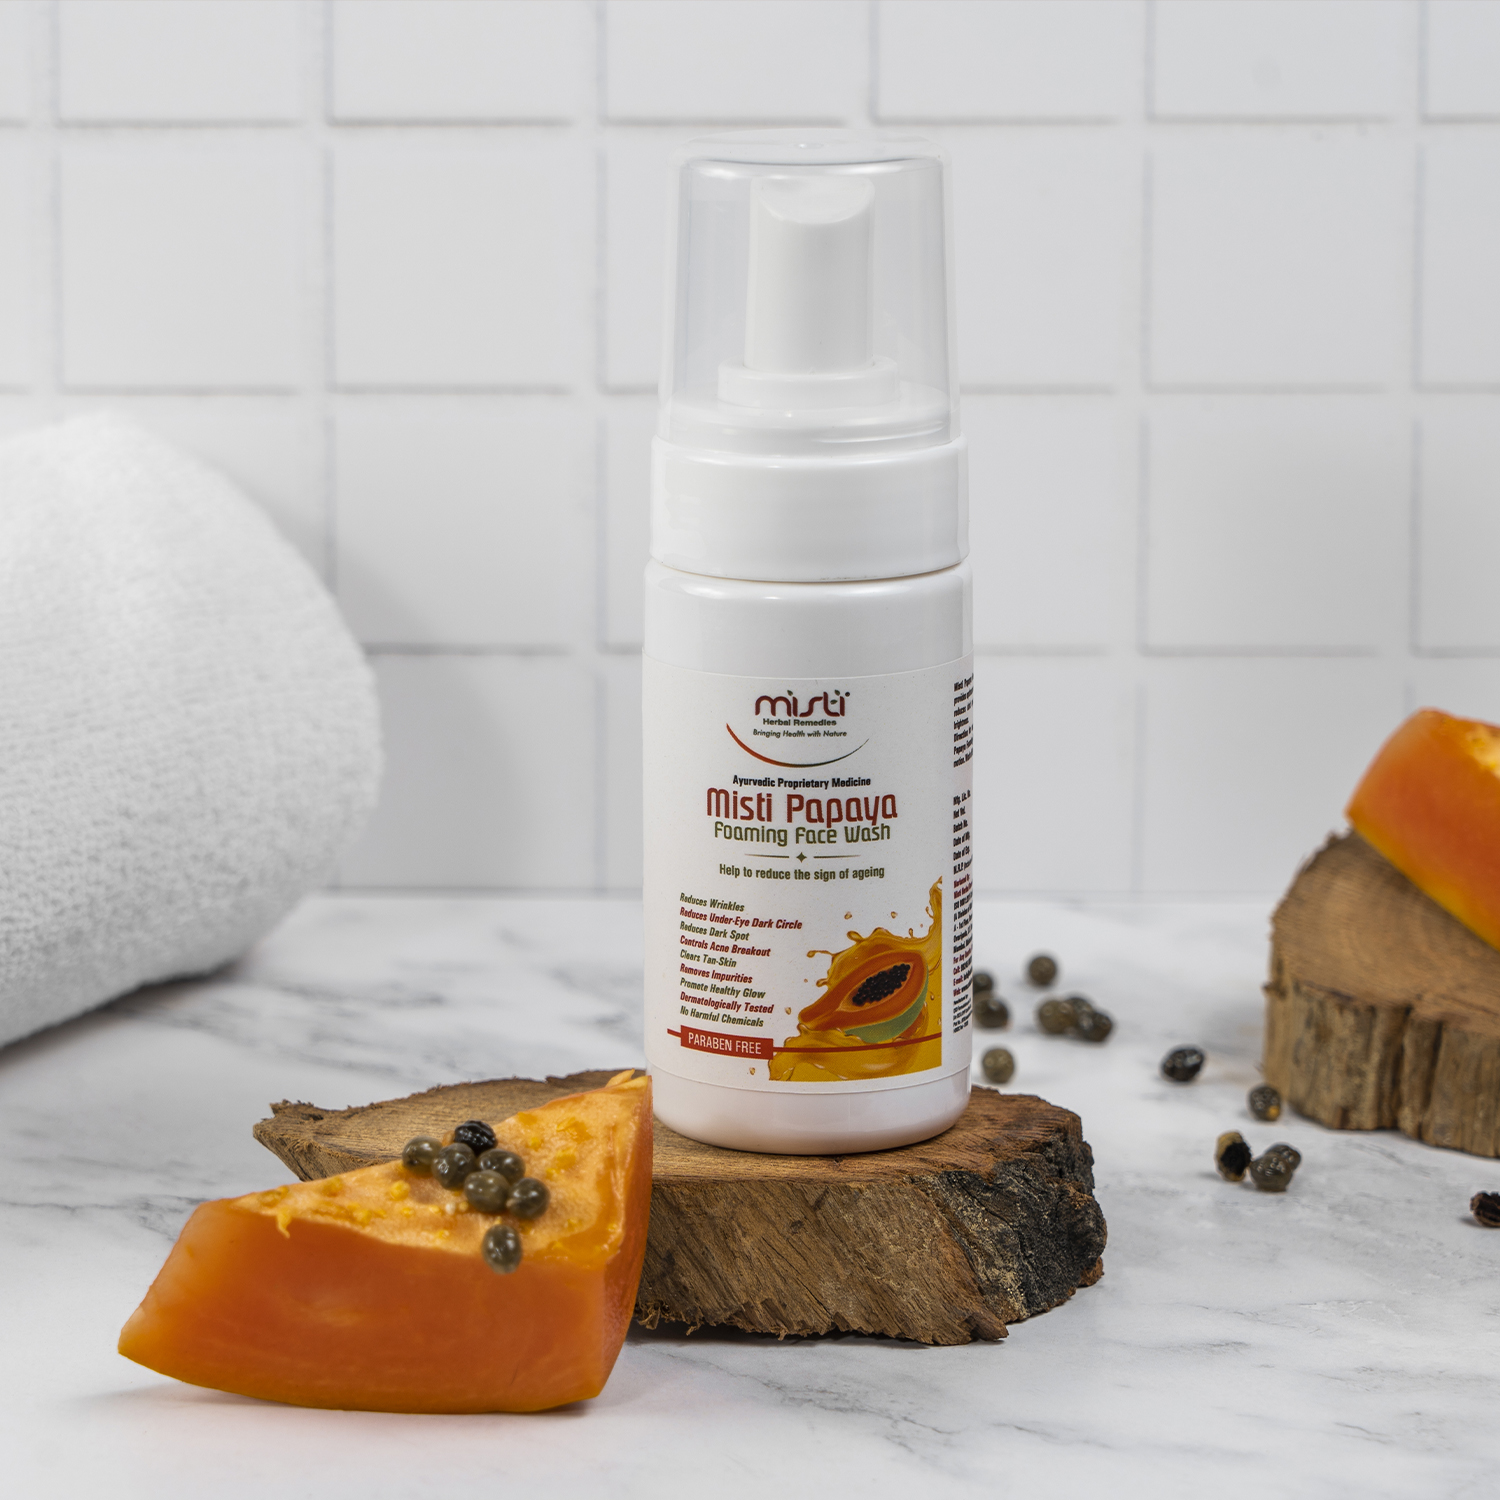 Papaya Foaming Face Wash for Glowing Skin – The Natural Wash